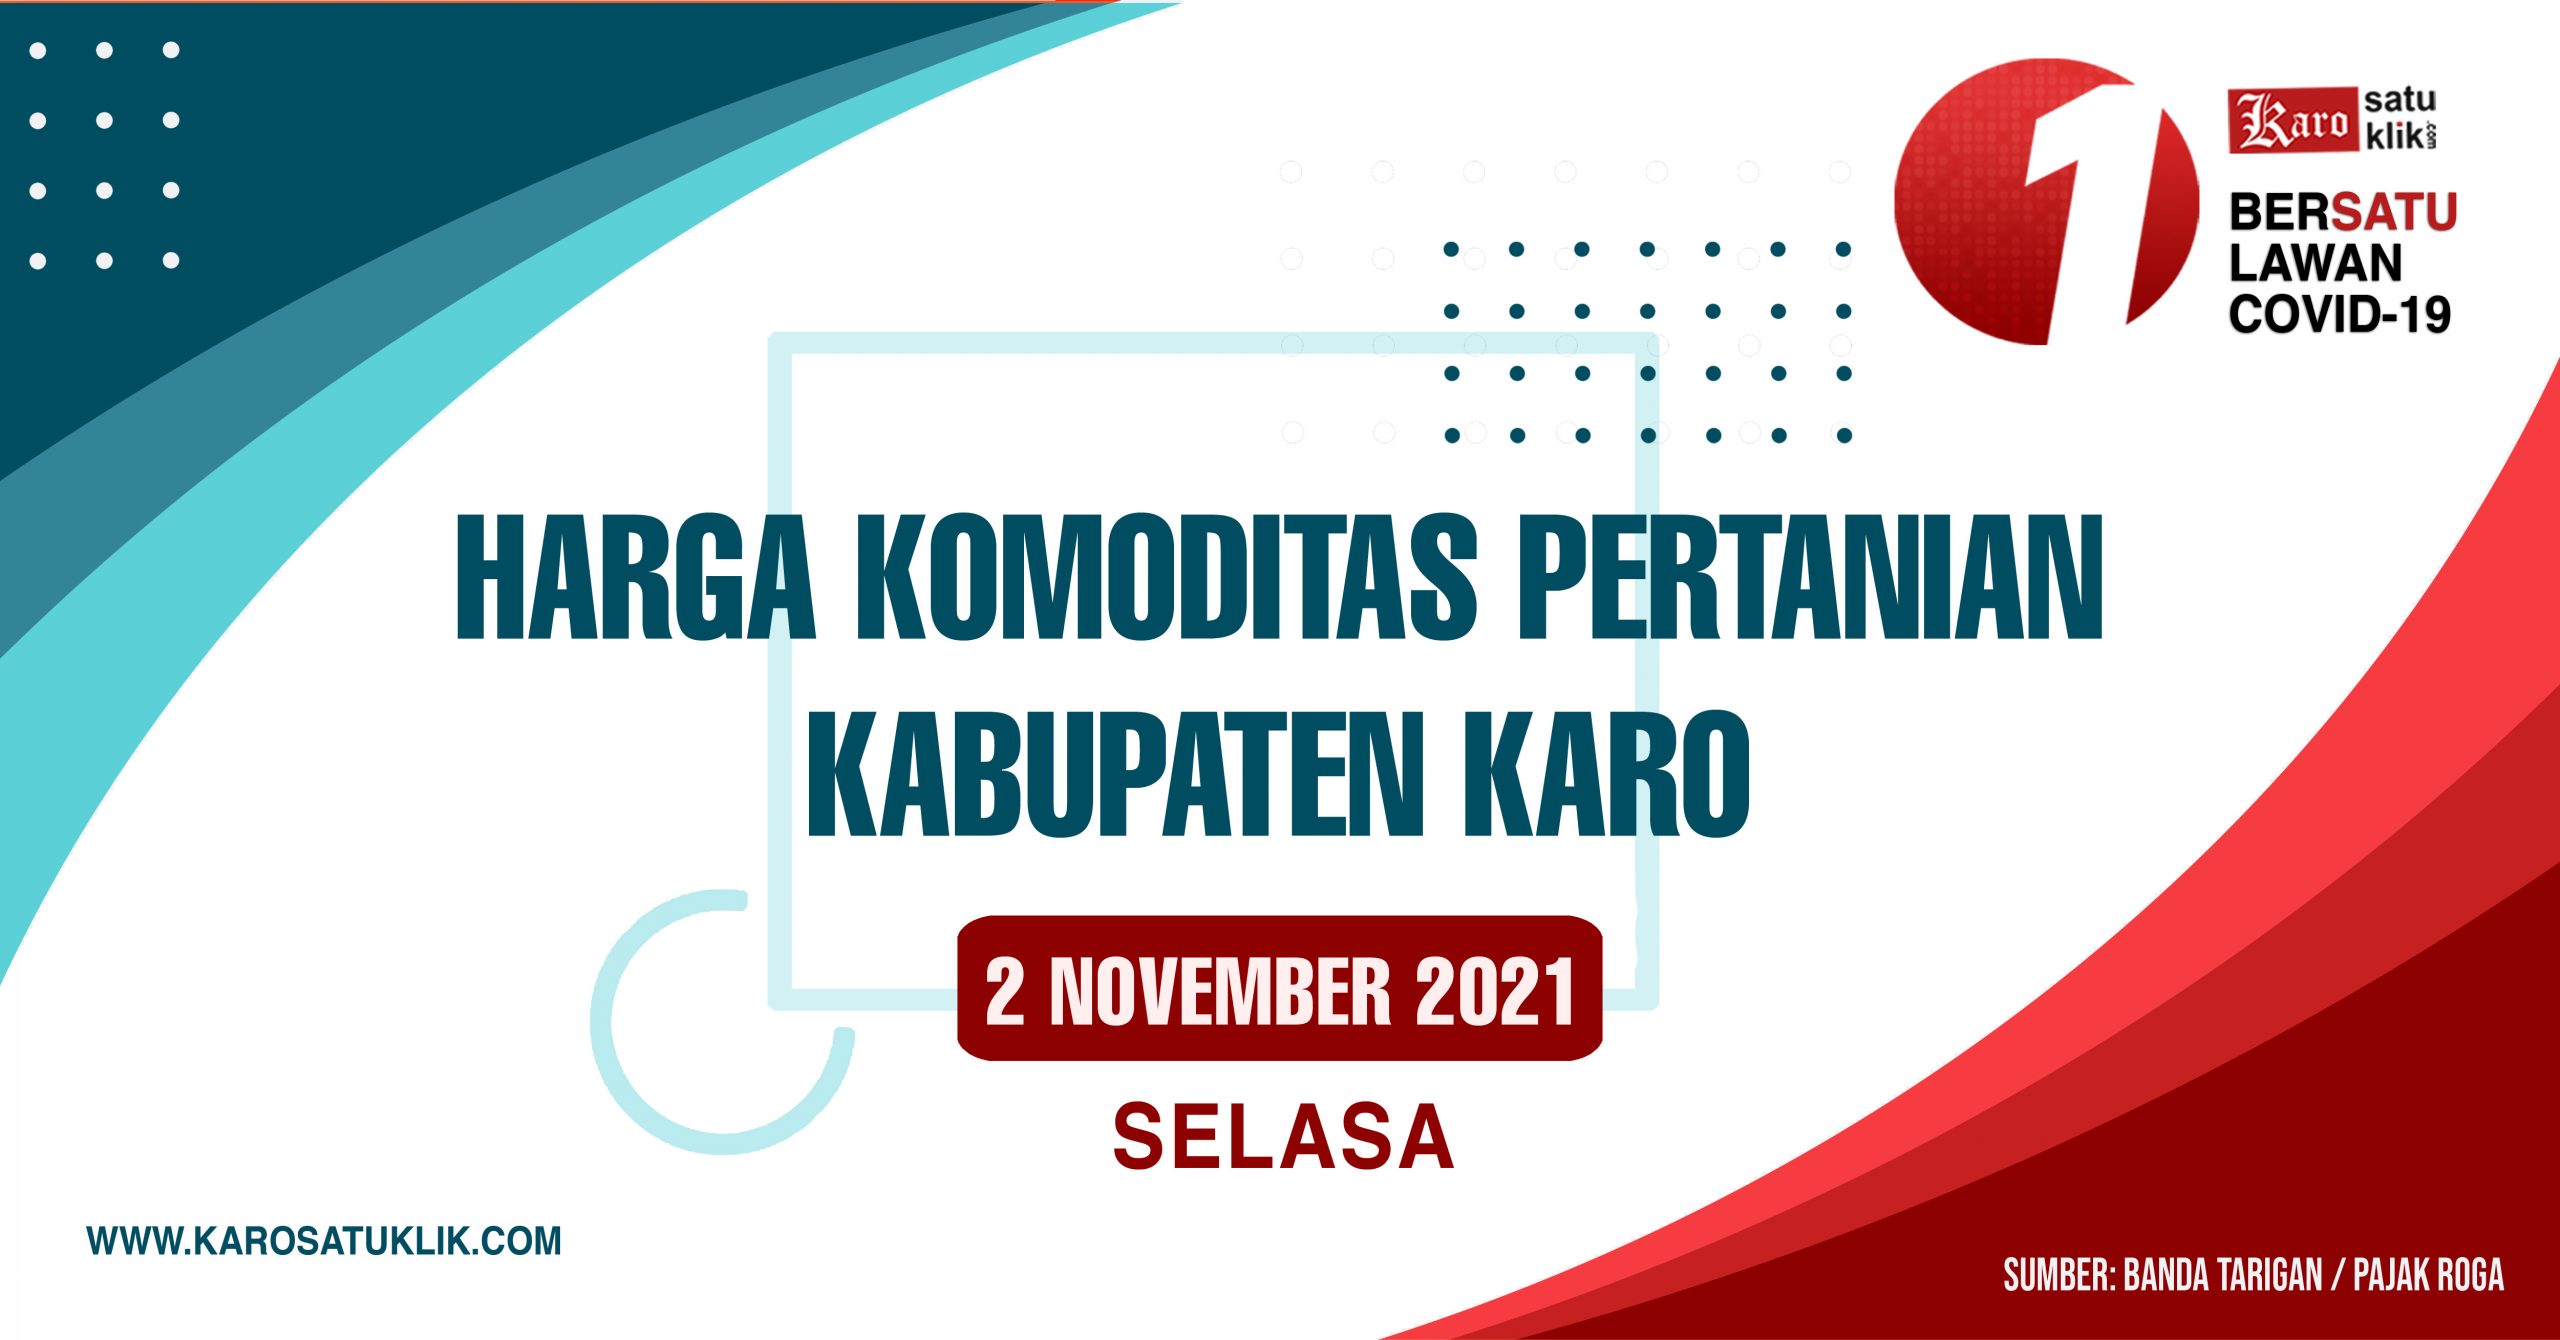 Daftar Harga Komoditas Pertanian Kabupaten Karo, 2 November 2021